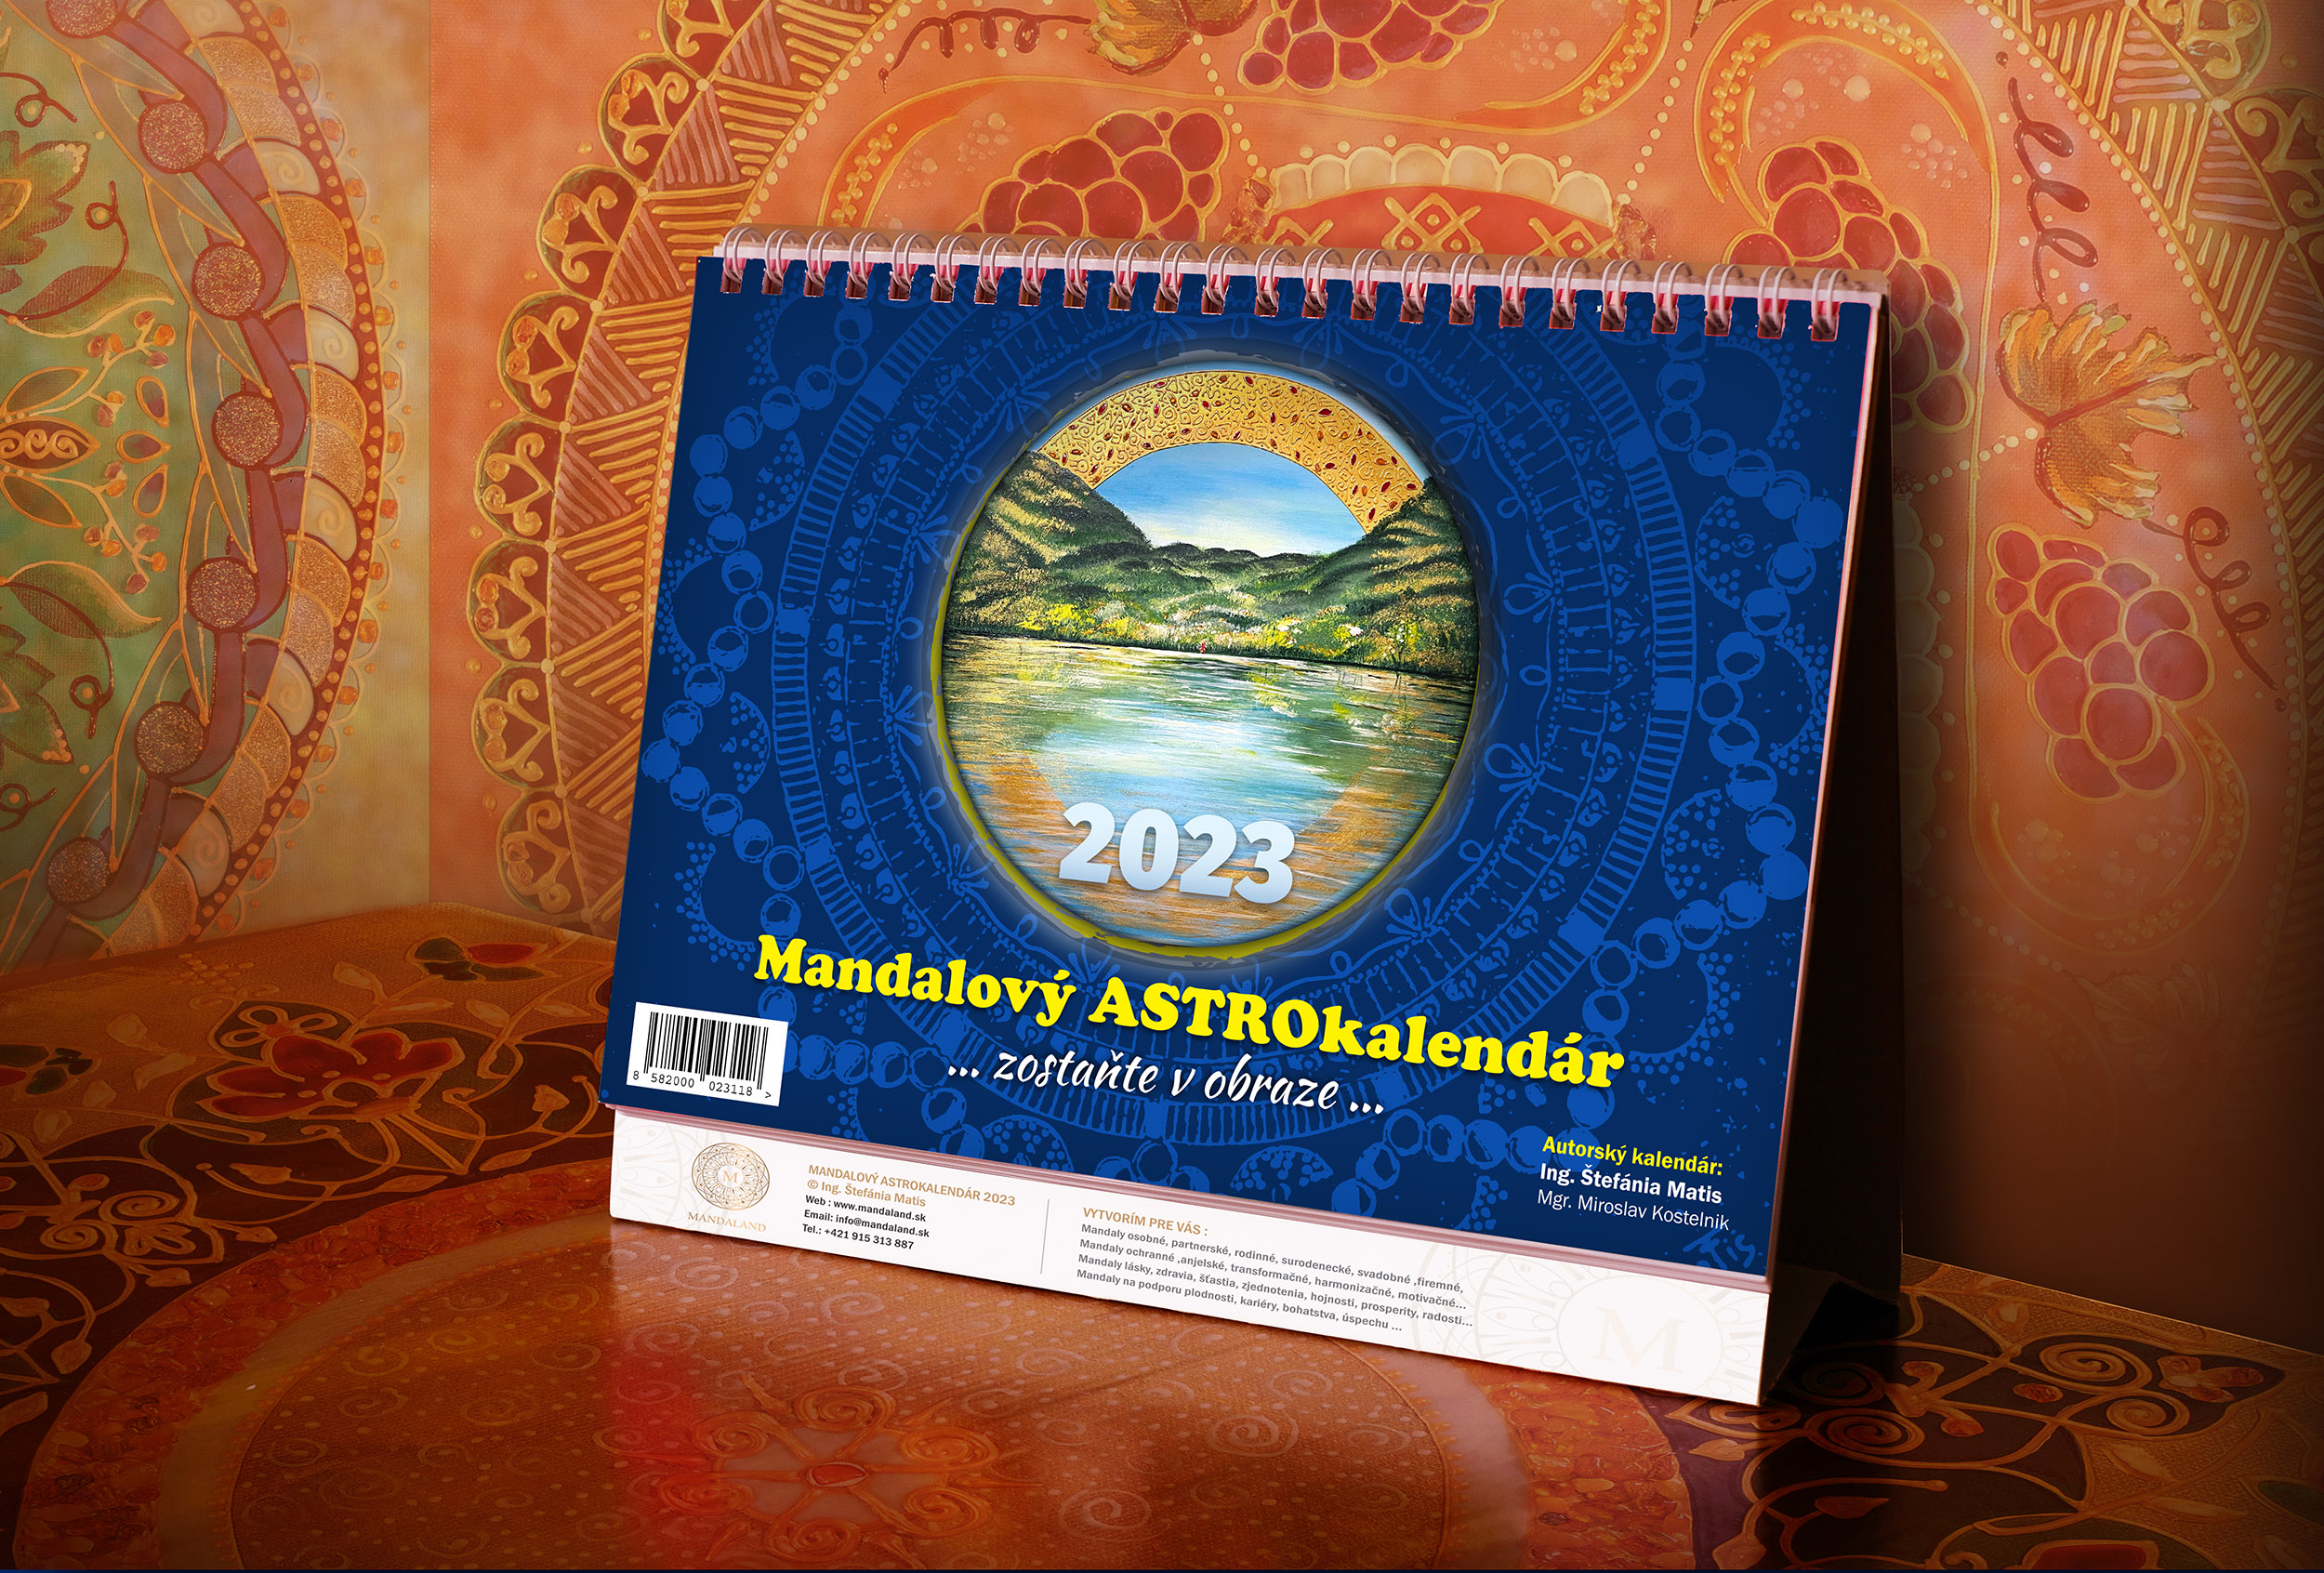 Mandalový astro-kalendár 2023 “ zostaňte v obraze“